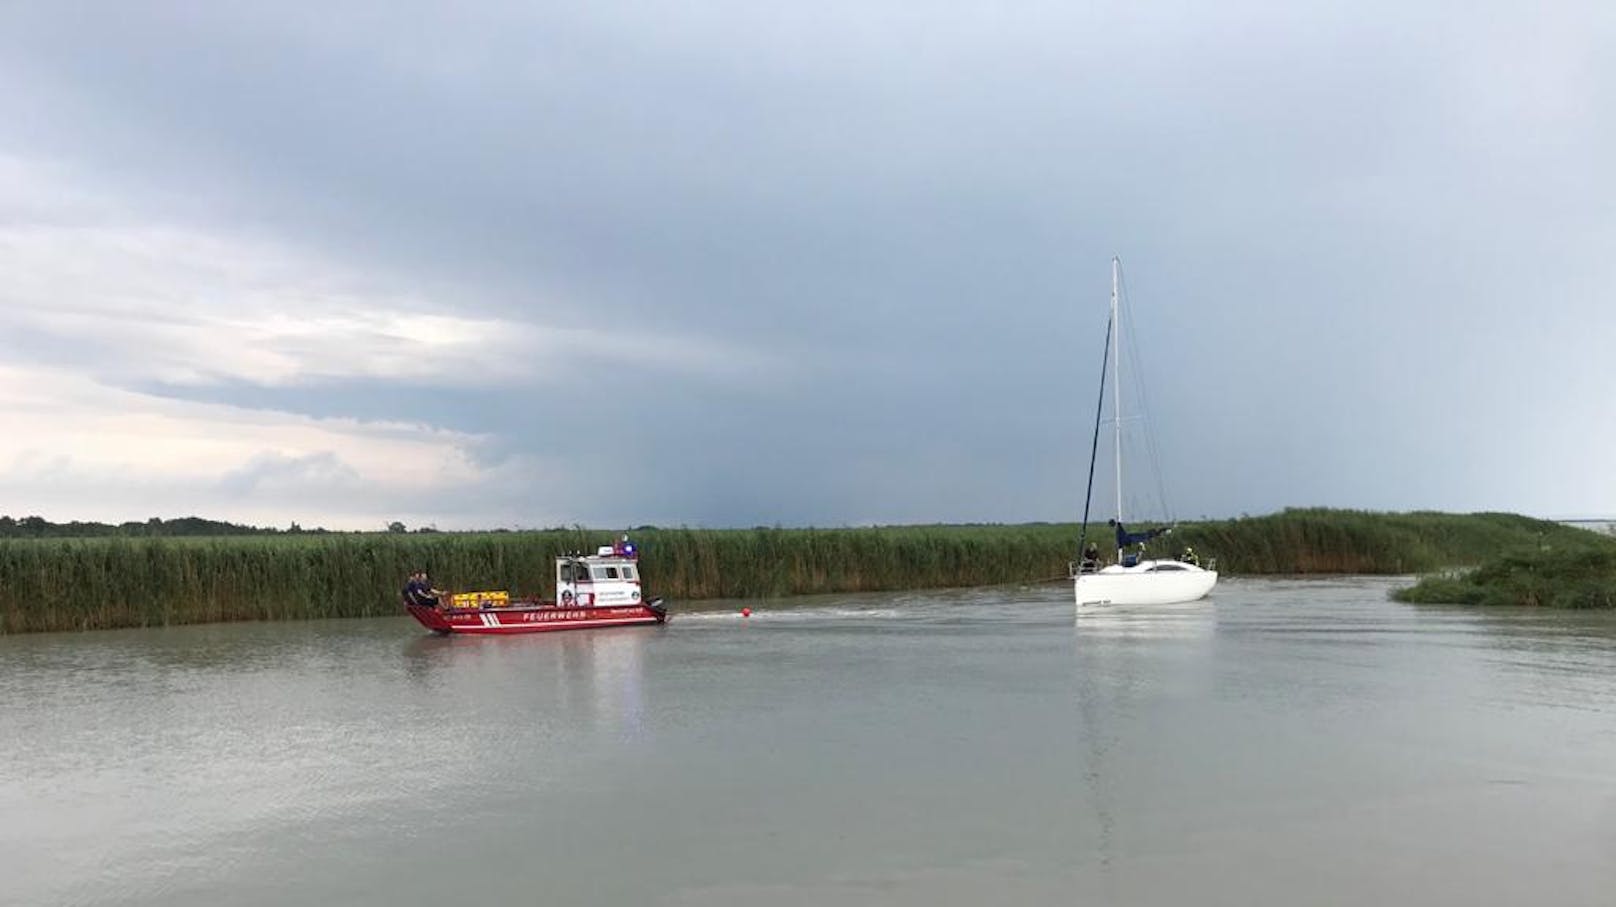 Brand auf Segelboot nach Blitzschlag am Neusiedler See (25. Juli 2020)